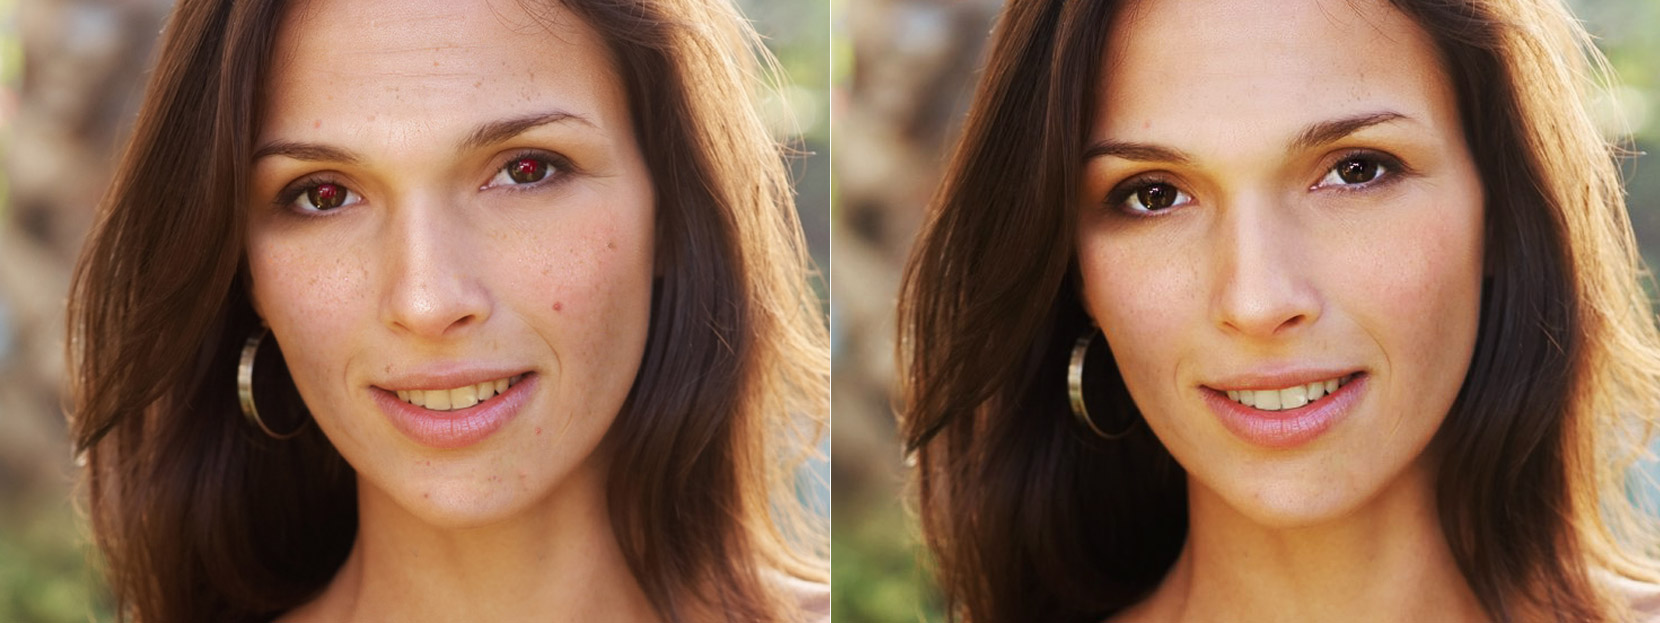 Avant et après retouche visage sur Makeup.Pho.to